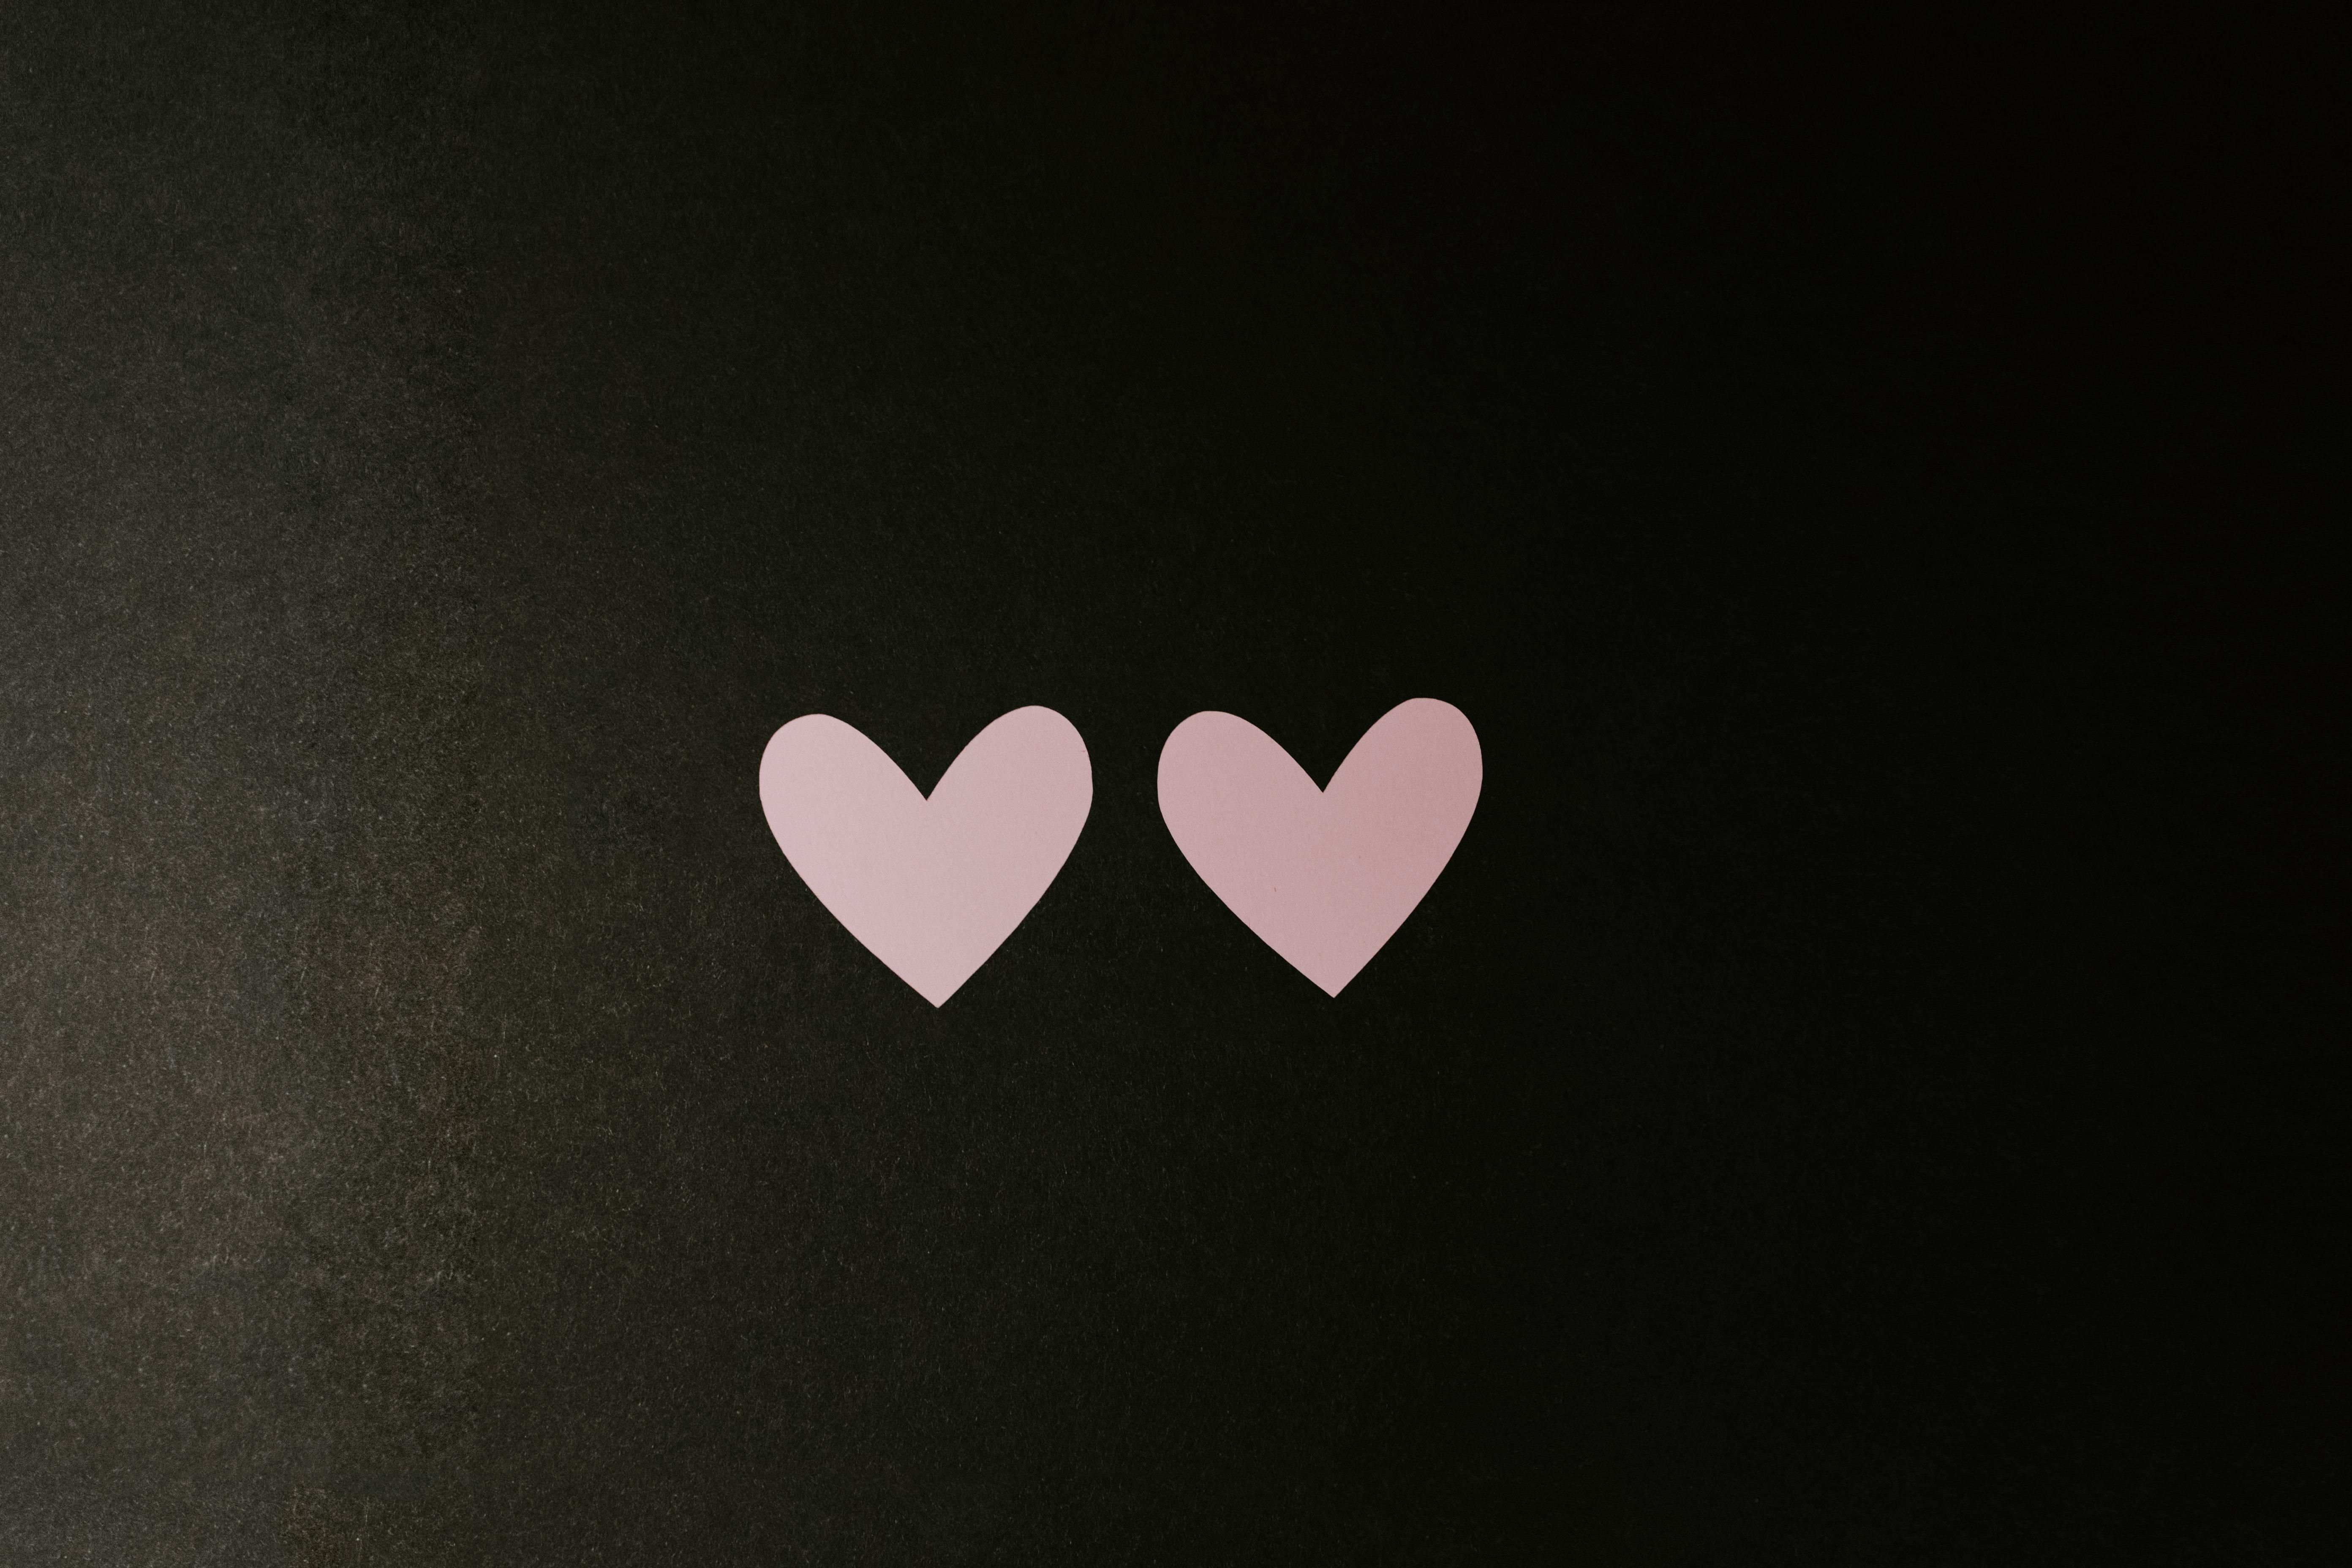 Két rózsaszín papírból kivágott szívecske egymás mellett egy sötét felületen